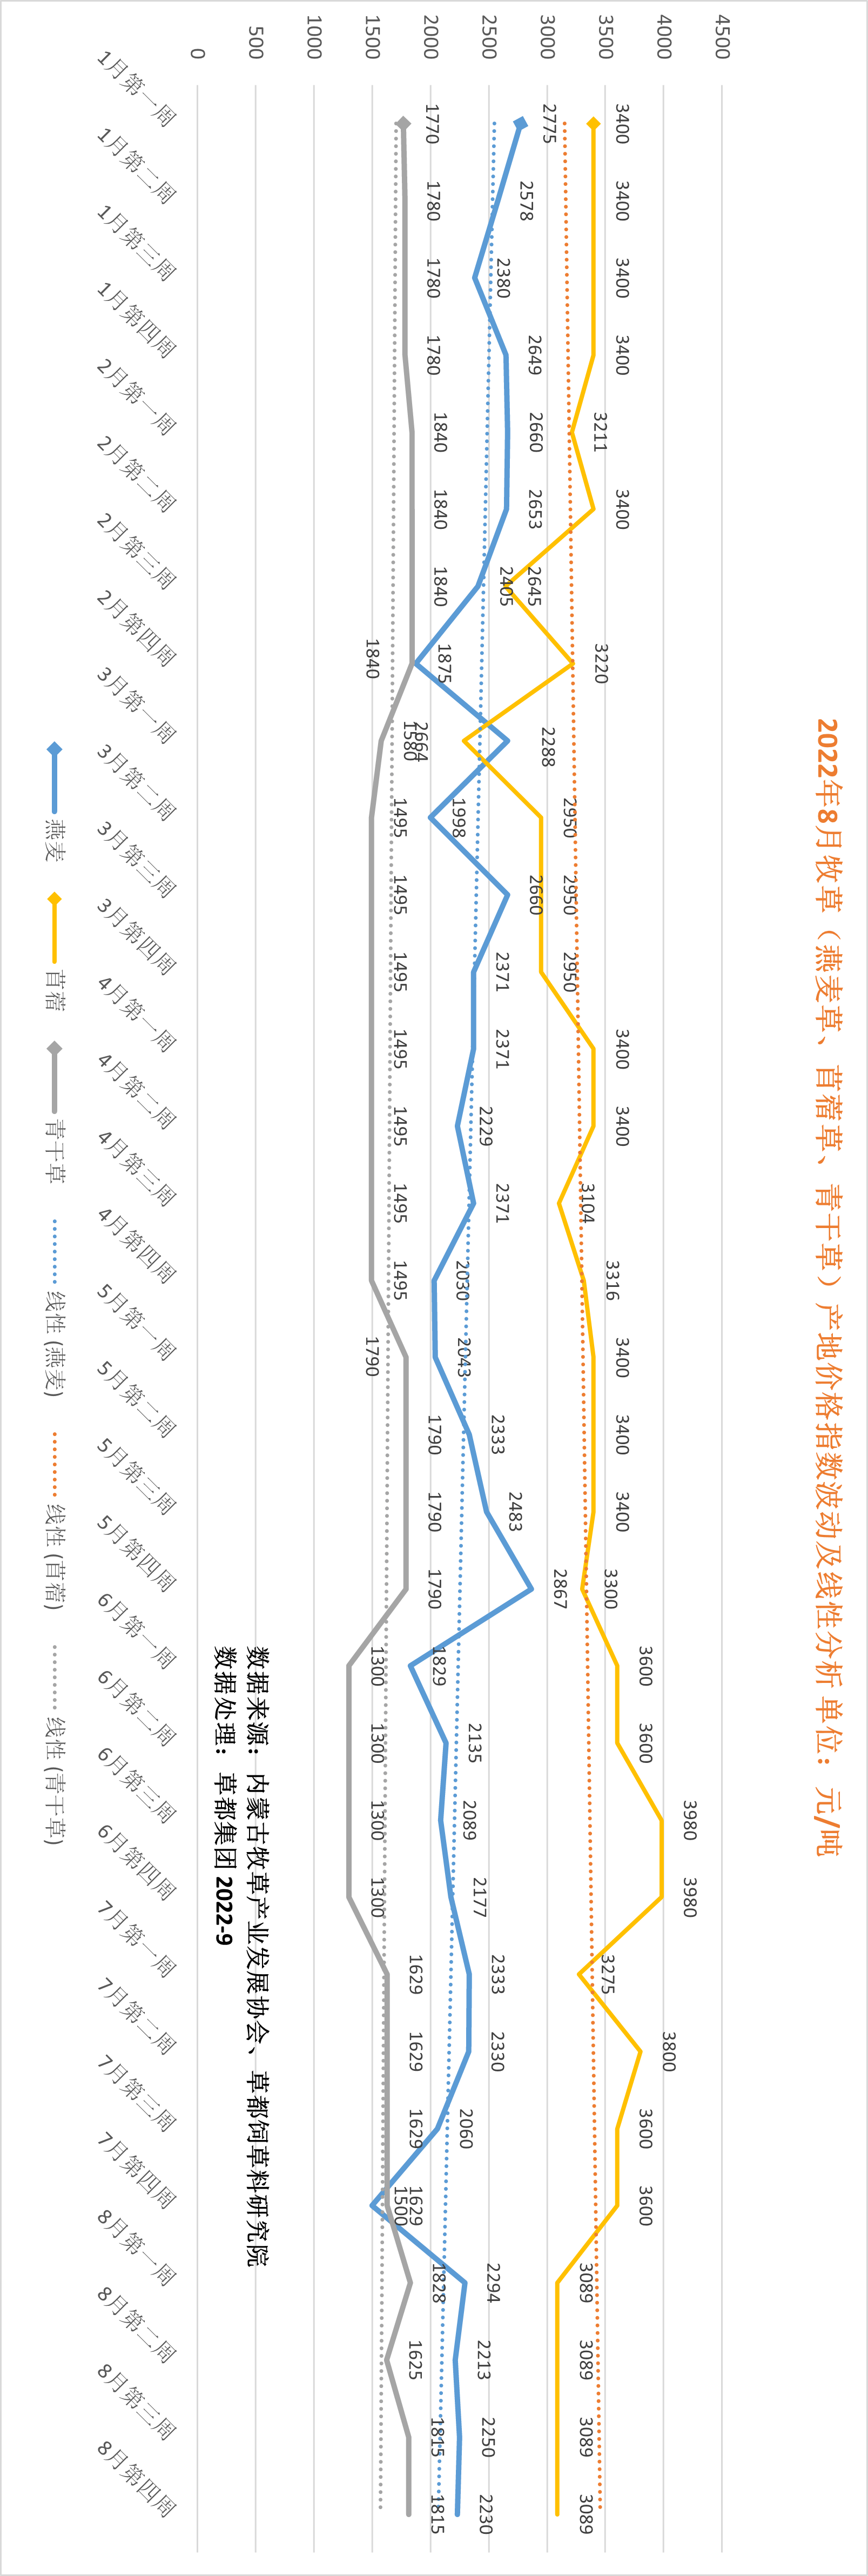 牧草大数据 | 牧草产地价格指数看这里（2022年8月数据）